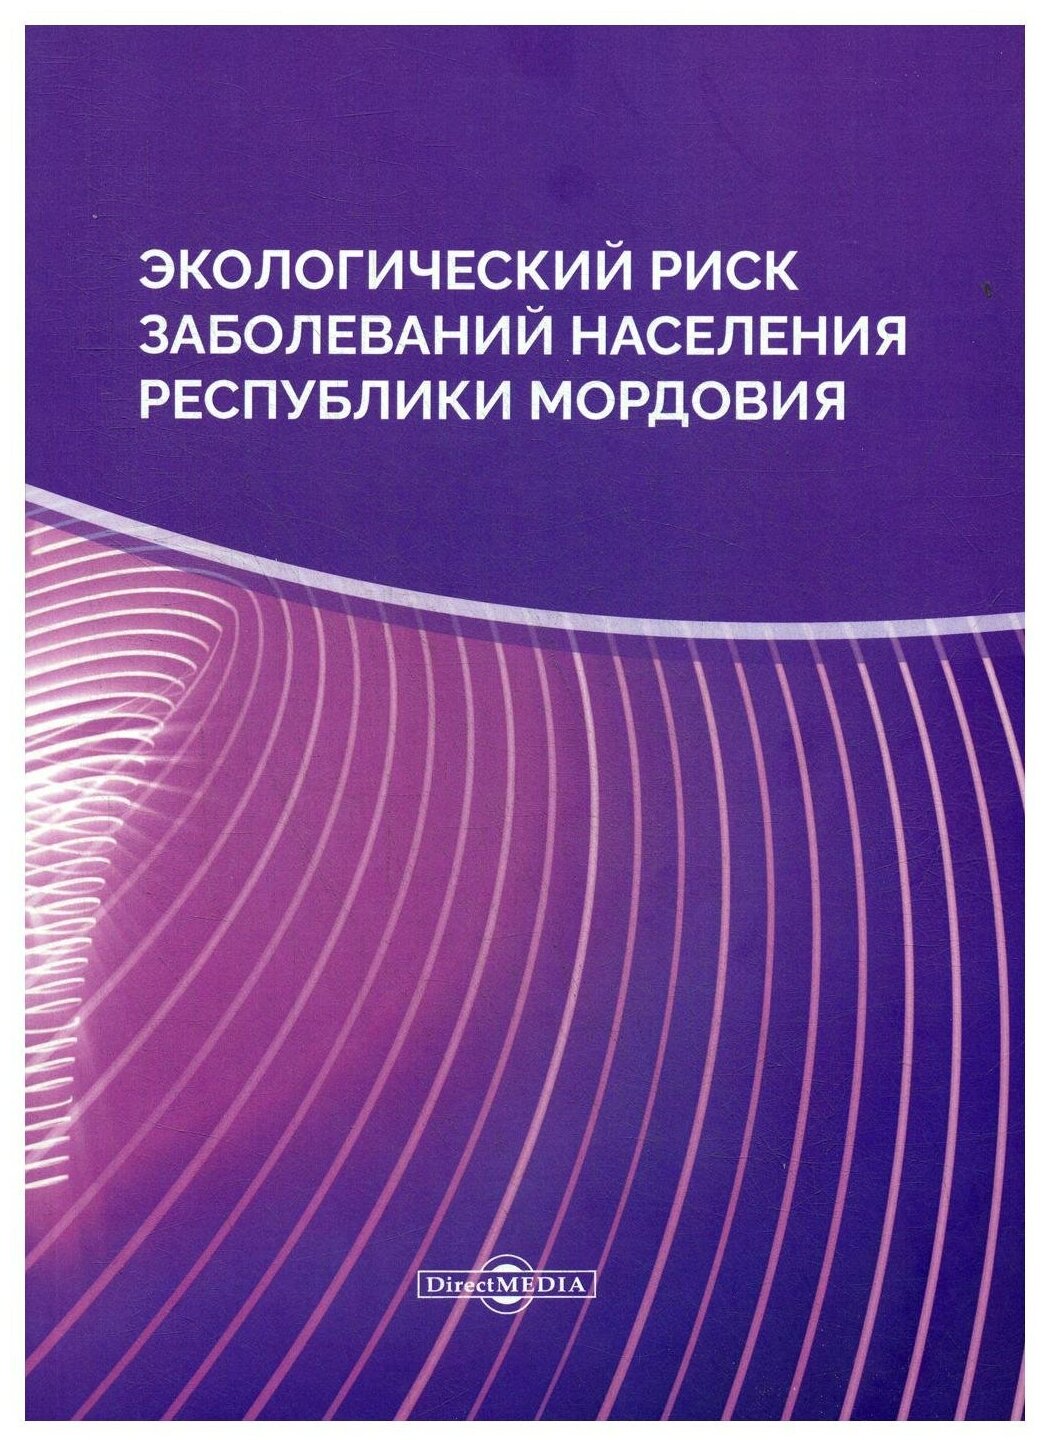 Книга Экологический риск заболеваний населения Республики Мордовия - фото №1